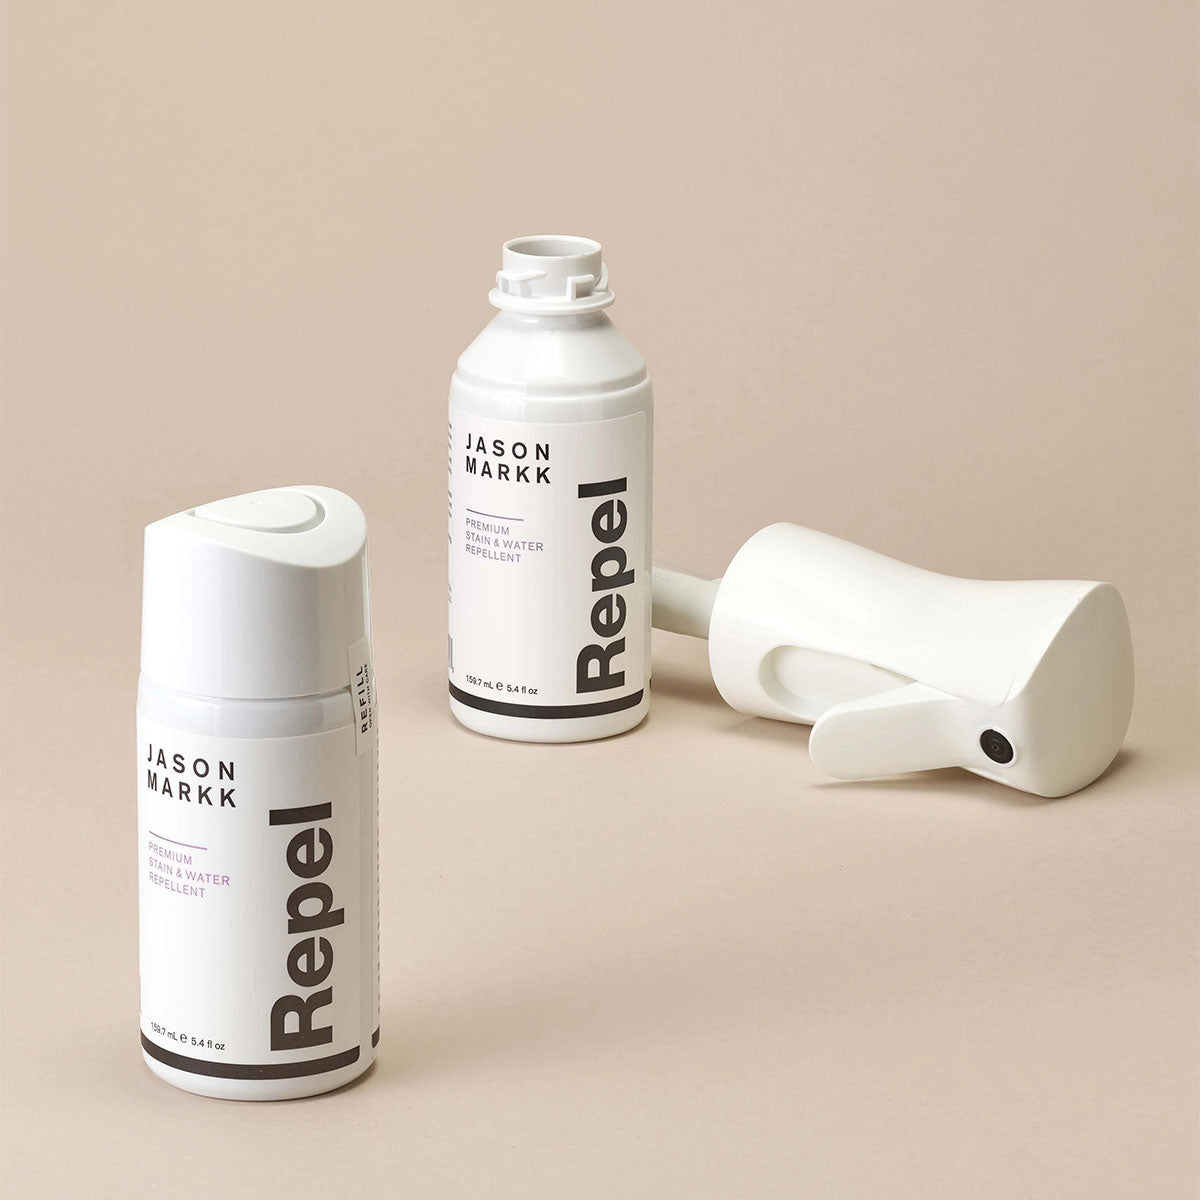 Recarga de Spray Repelente para Calzado "Repel Spray" - Limpiadores de Calzado Jason Markk